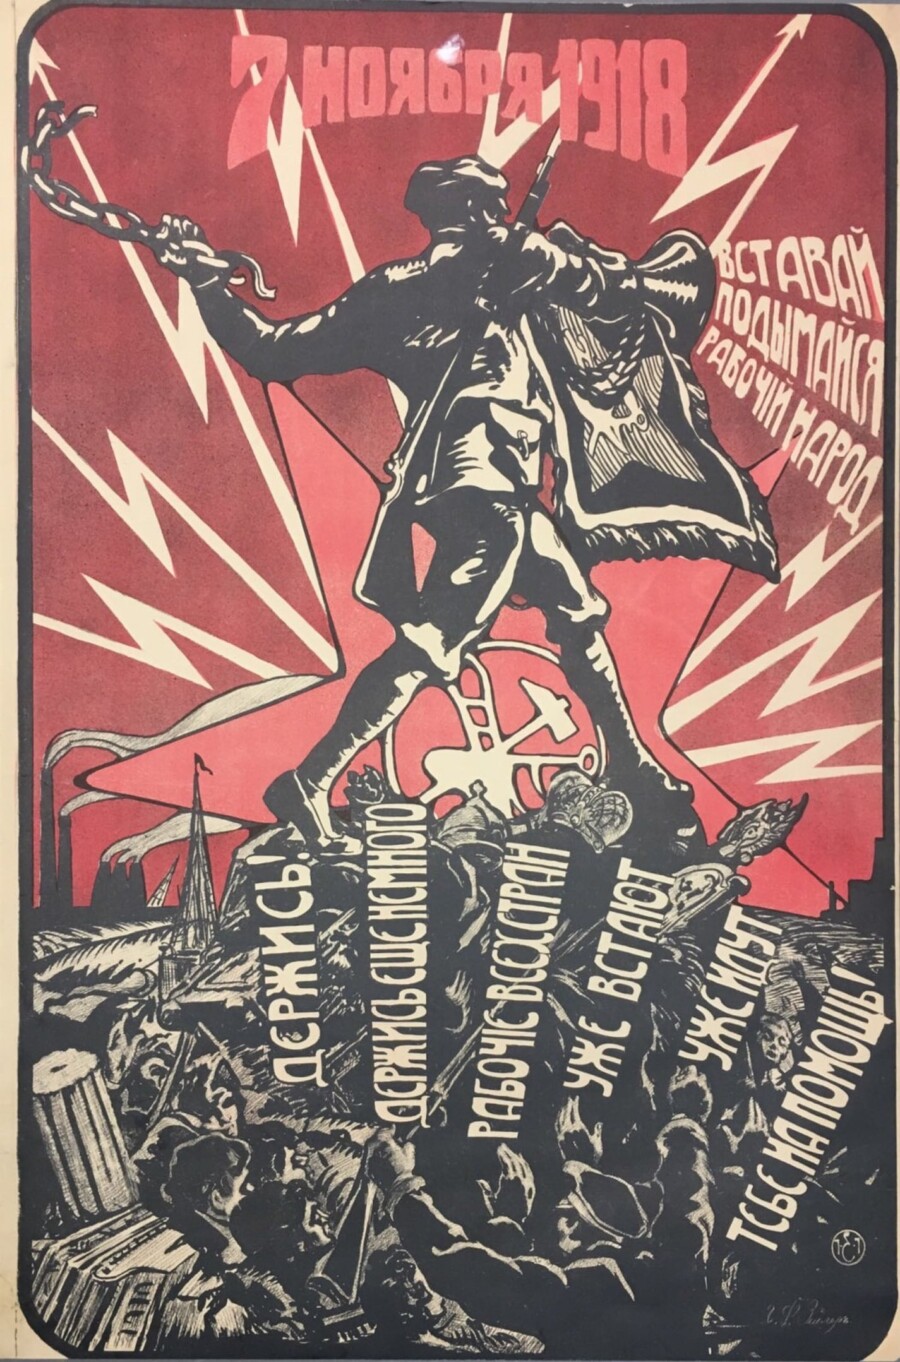 7-noyabrya-1918-vstavaj-podymajsya-rabochij-narod-derzhis-derzhis-eshhe-nemnogo-rabochie-vseh-stran-uzhe-stayut-uzhe-idut-tebe-na-pomoshh